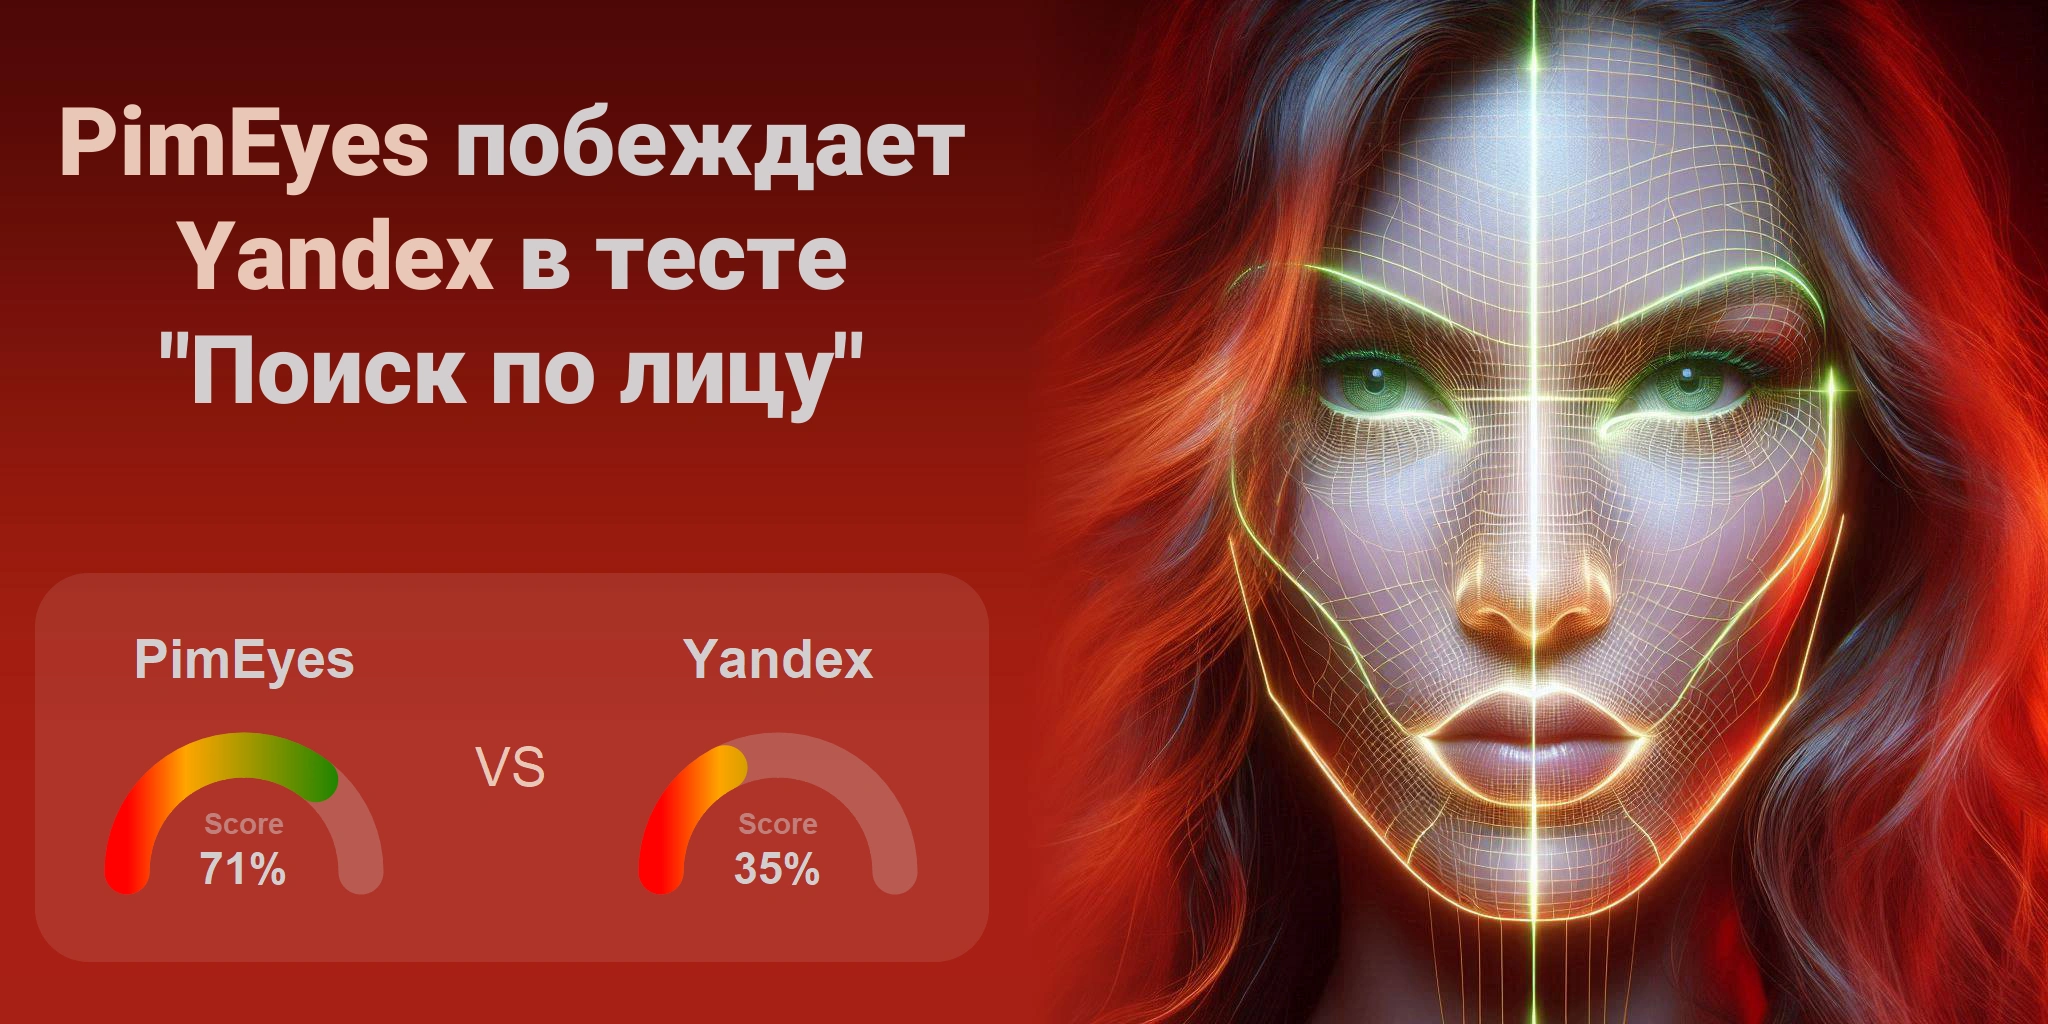 Что лучше для поиска по лицам: <br>PimEyes или Yandex?